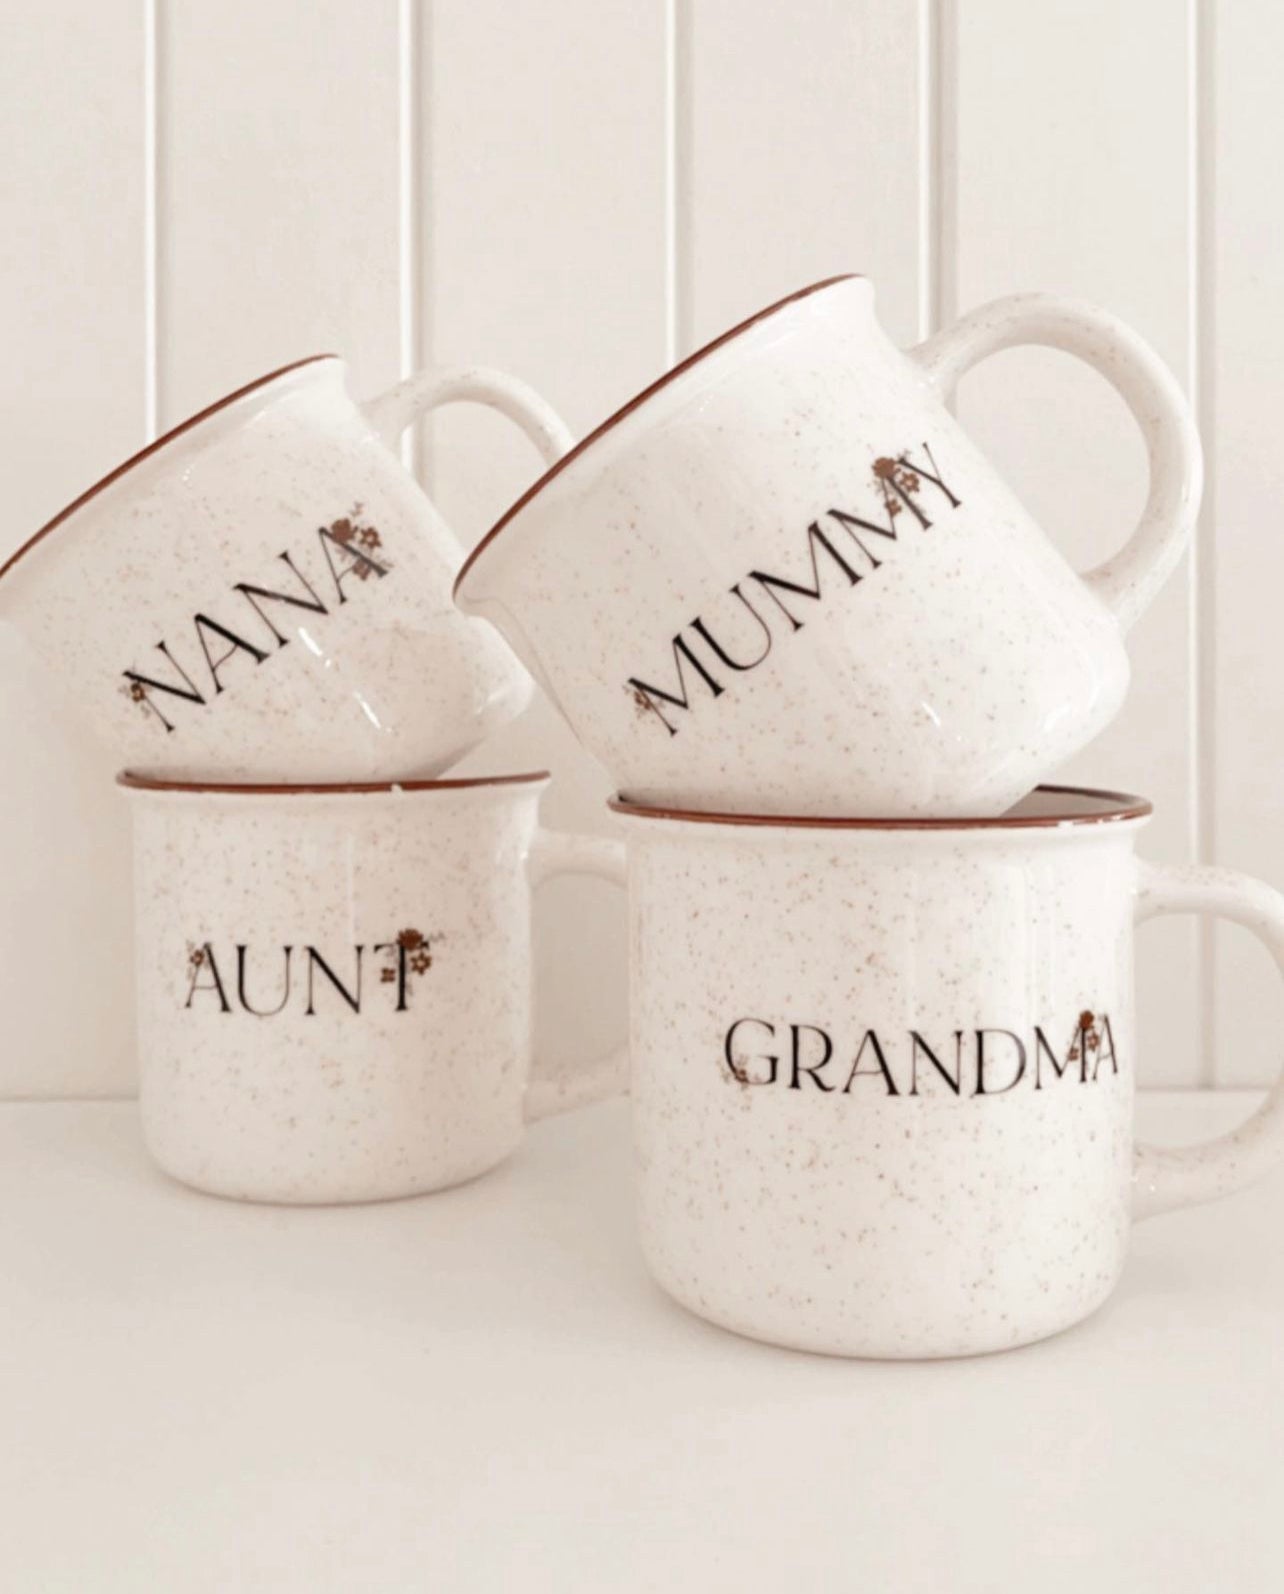 Aunt Ceramic Mug